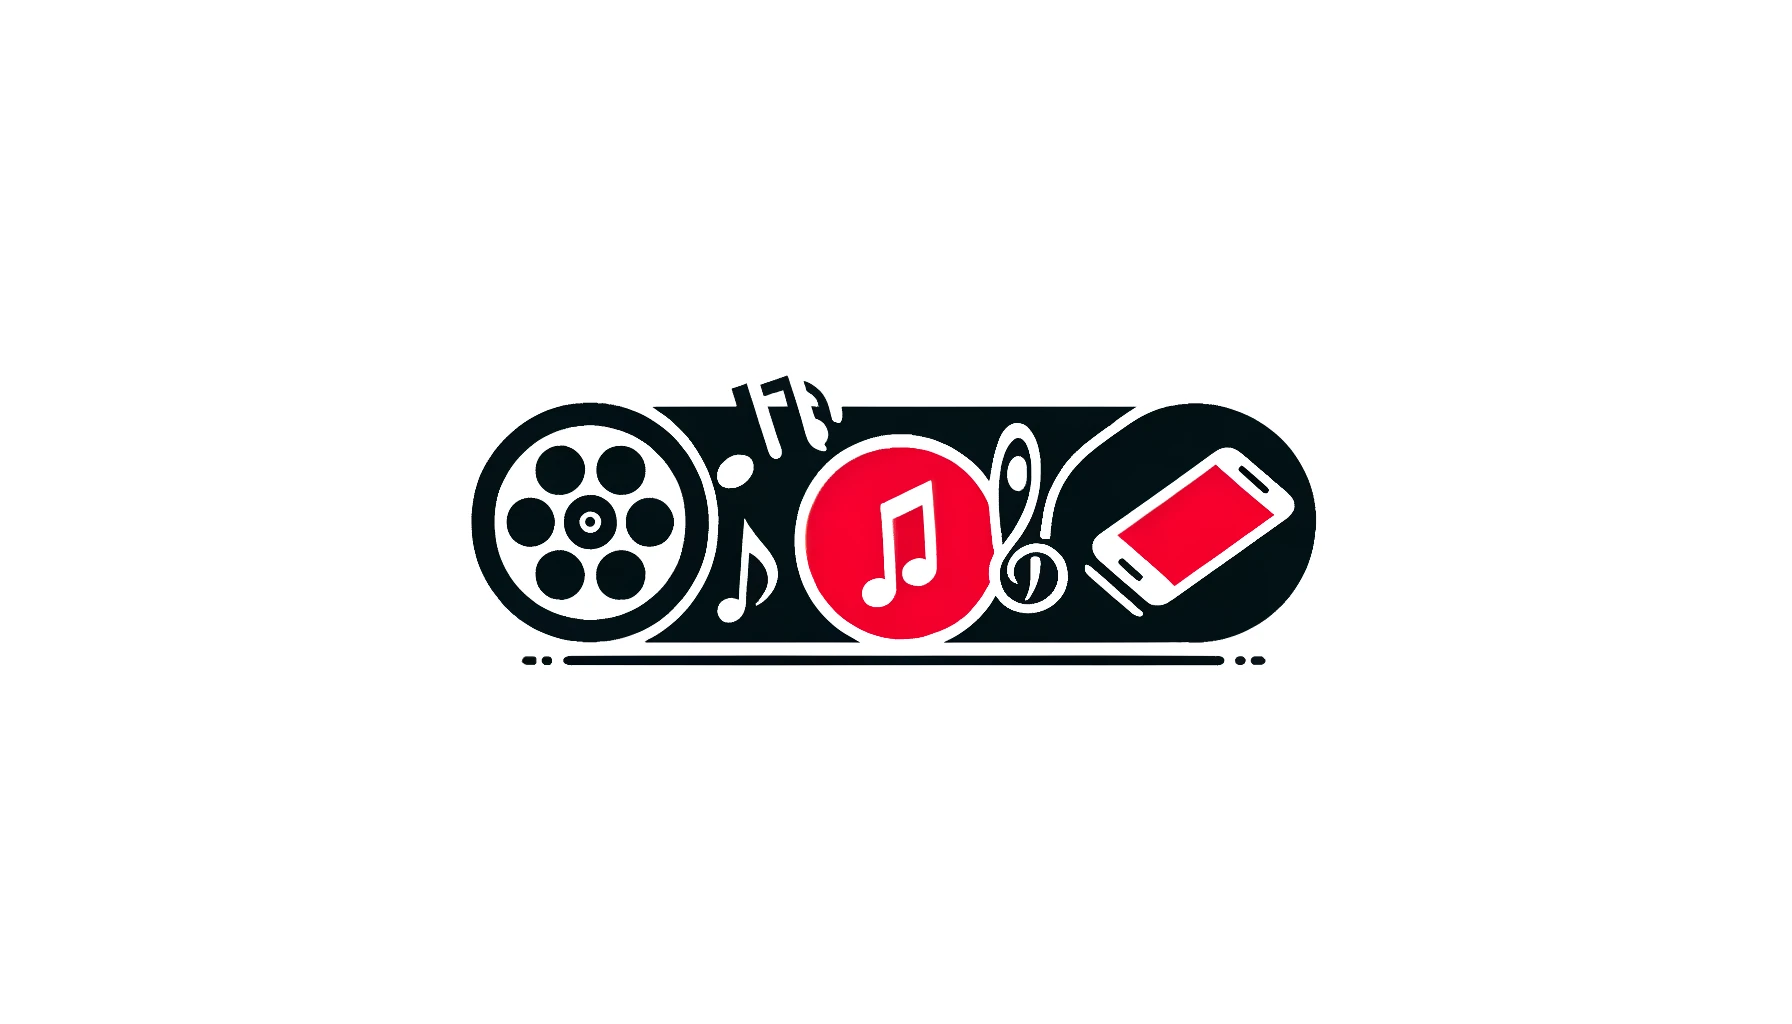 映画 音楽 スマホアプリサービスのおすすめ セレクト欲しいが見つかるモノ比較メディア